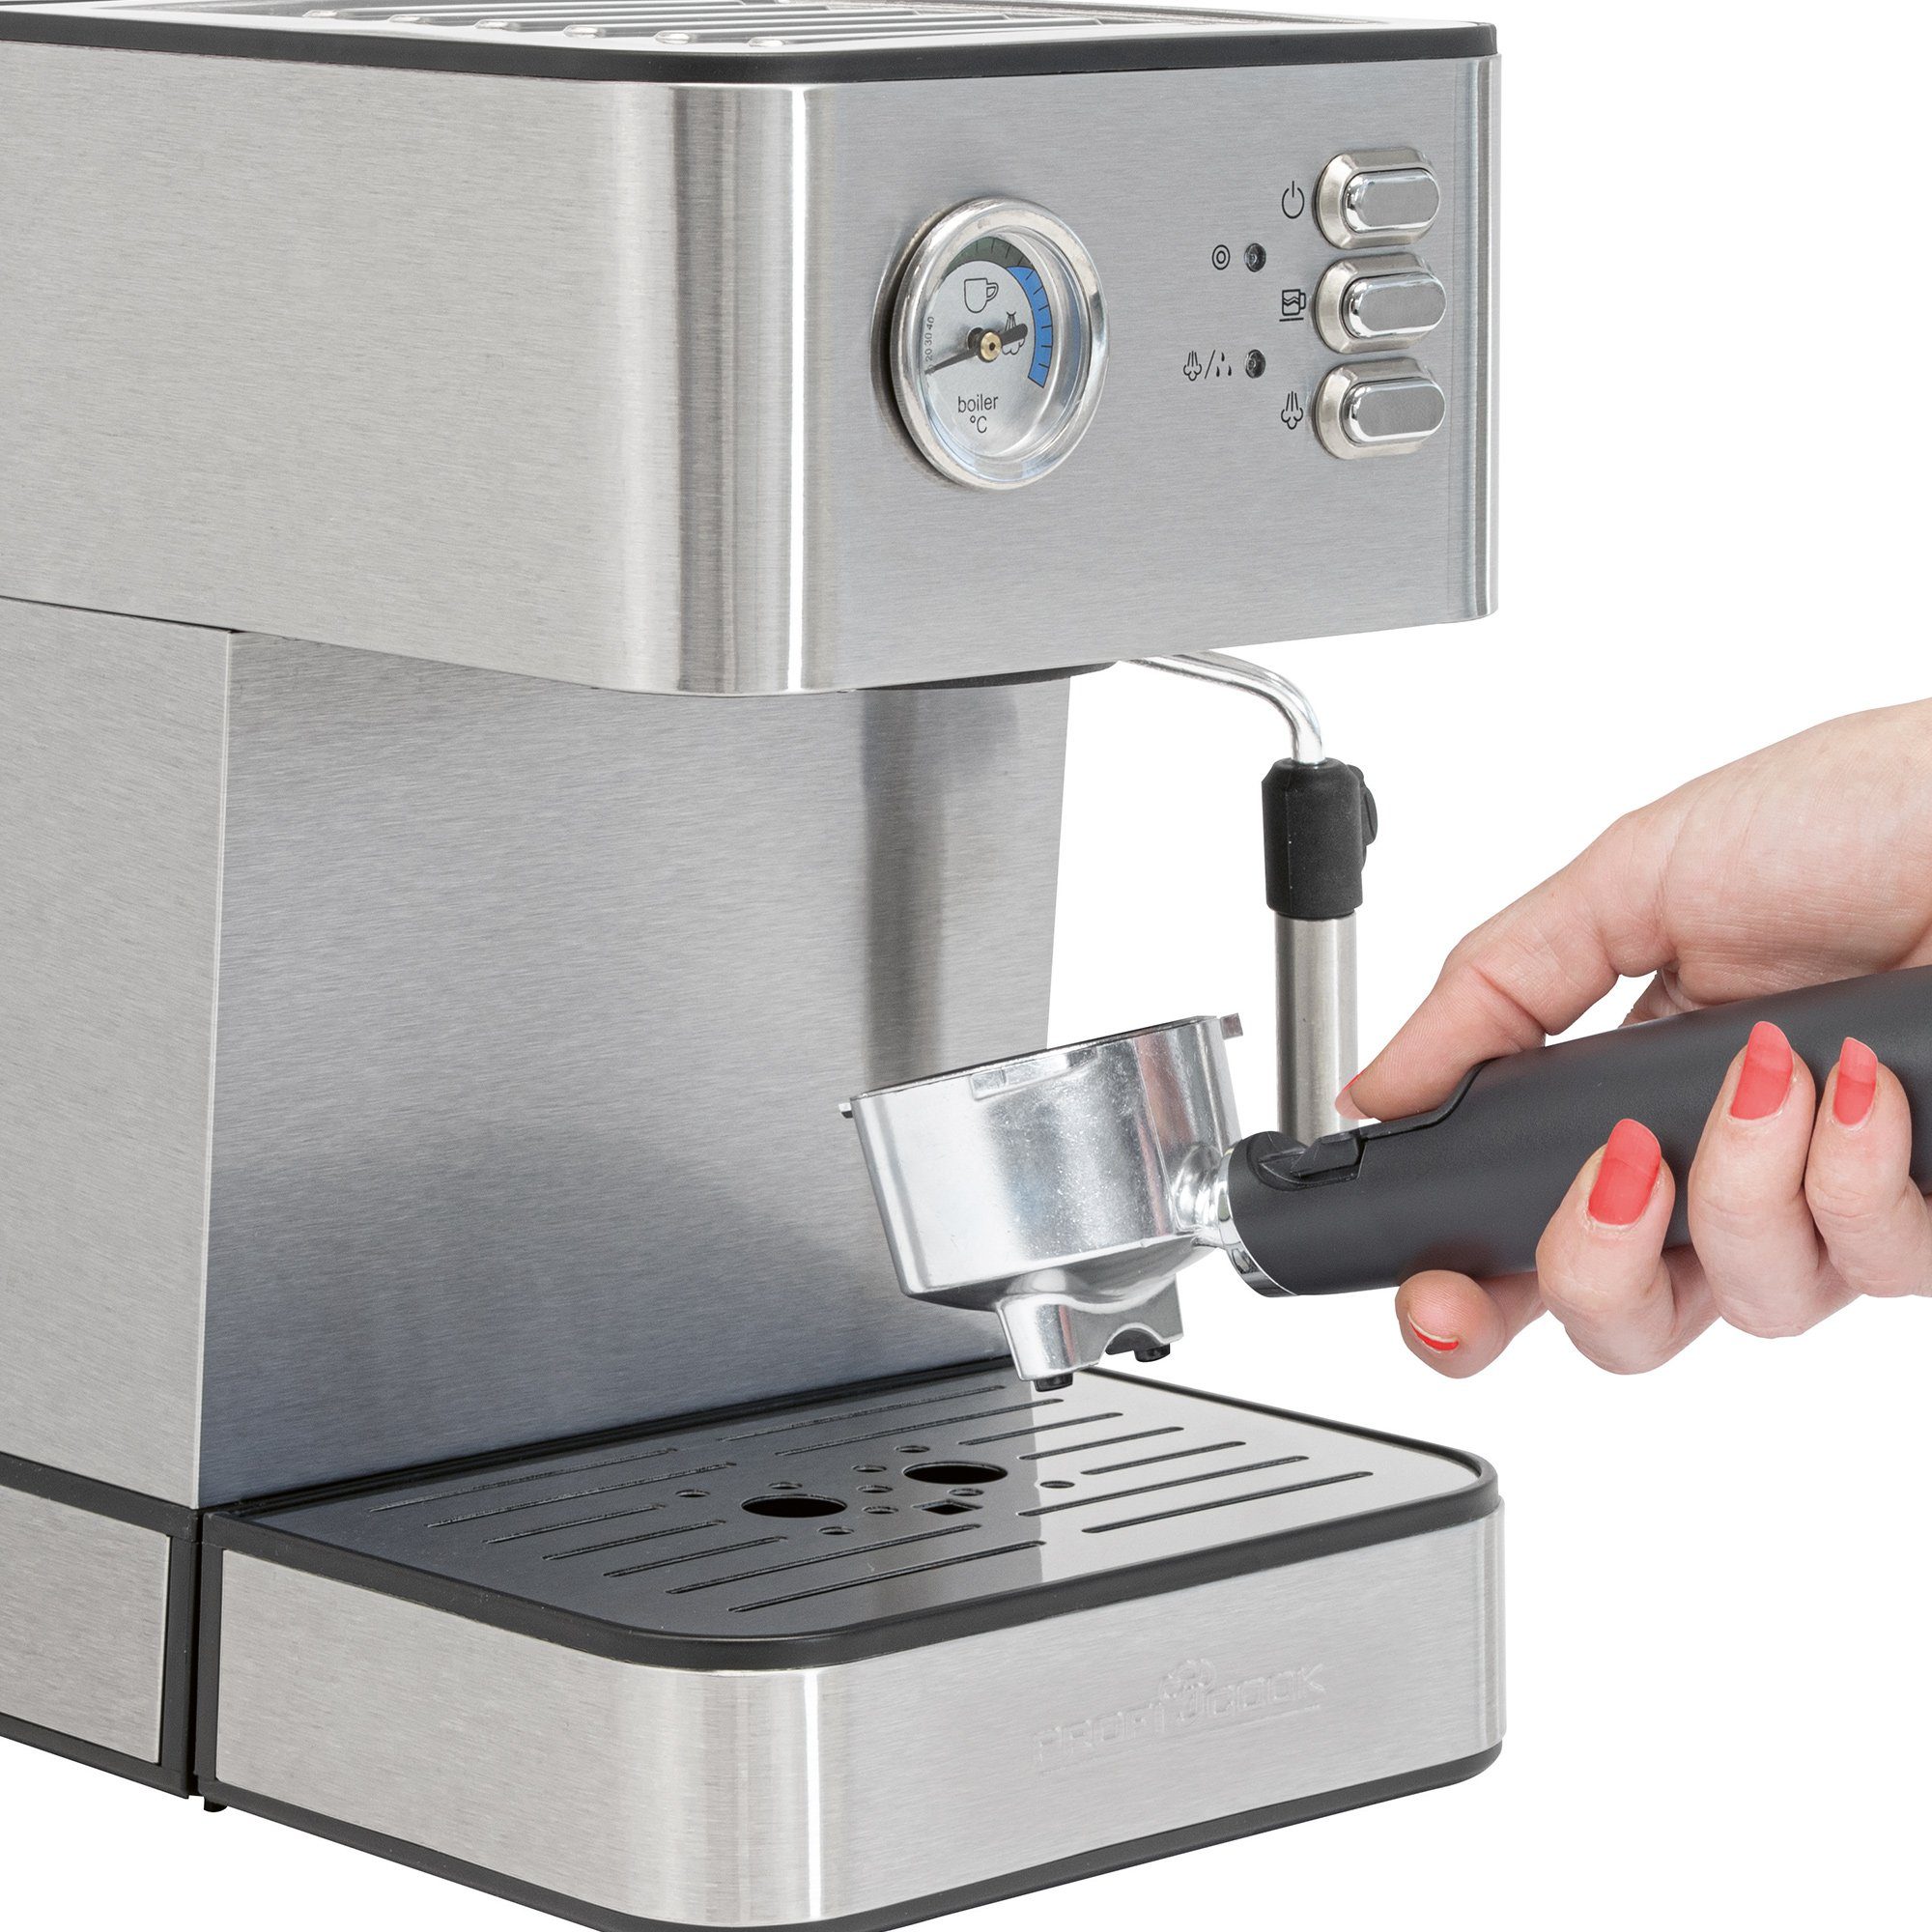 PC-ES Profi-Espressopumpe, 1209, edelstahl Aufschäumfunktion Espressomaschine Alu-Druckguss-Siebträger, ProfiCook